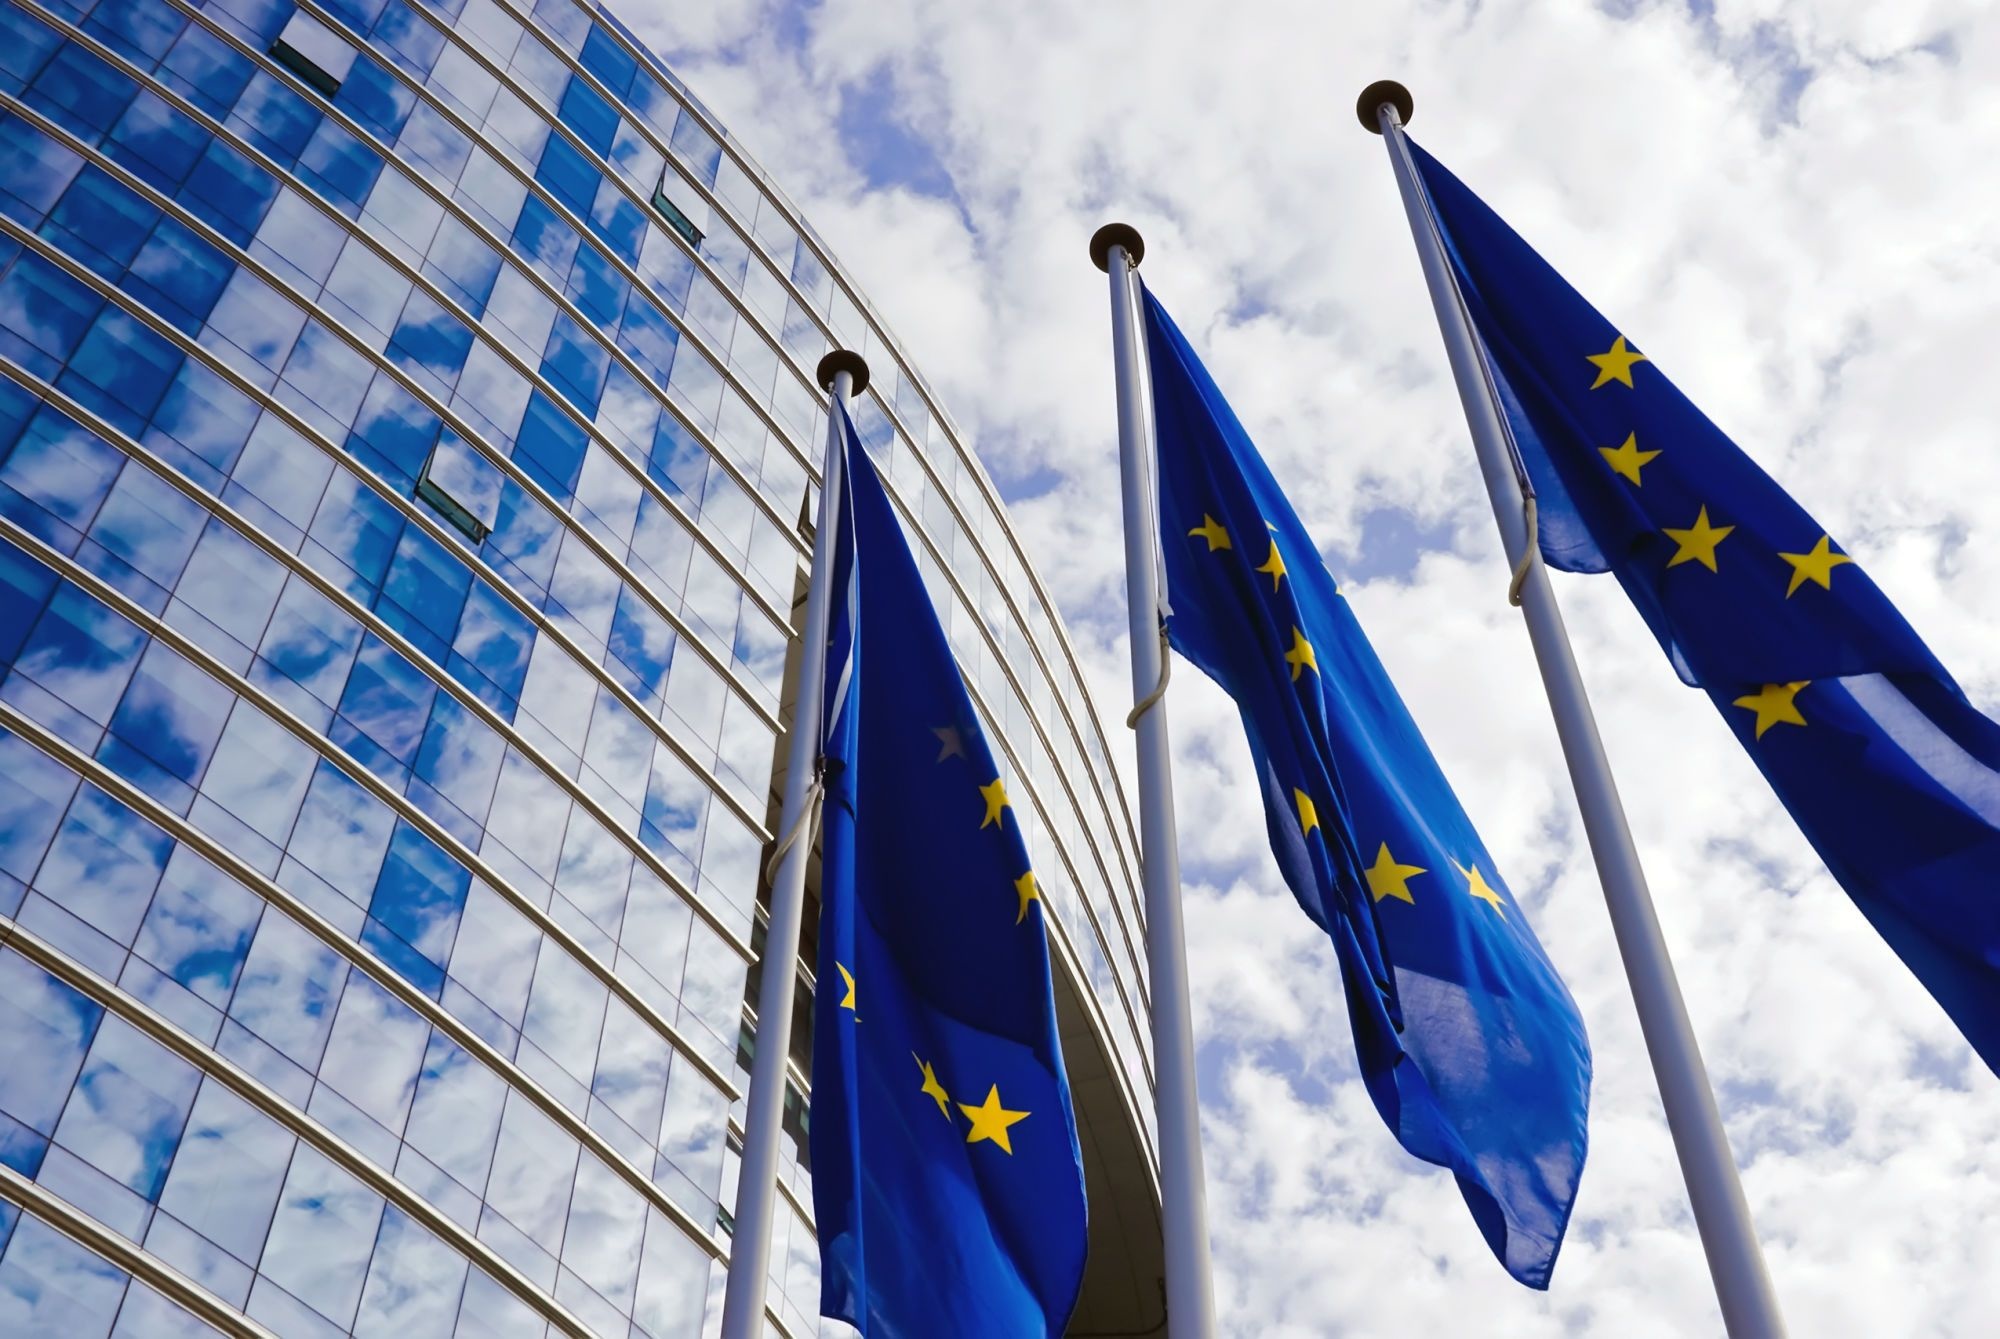 EUR-Lex Prieiga prie Europos Sąjungos teisės